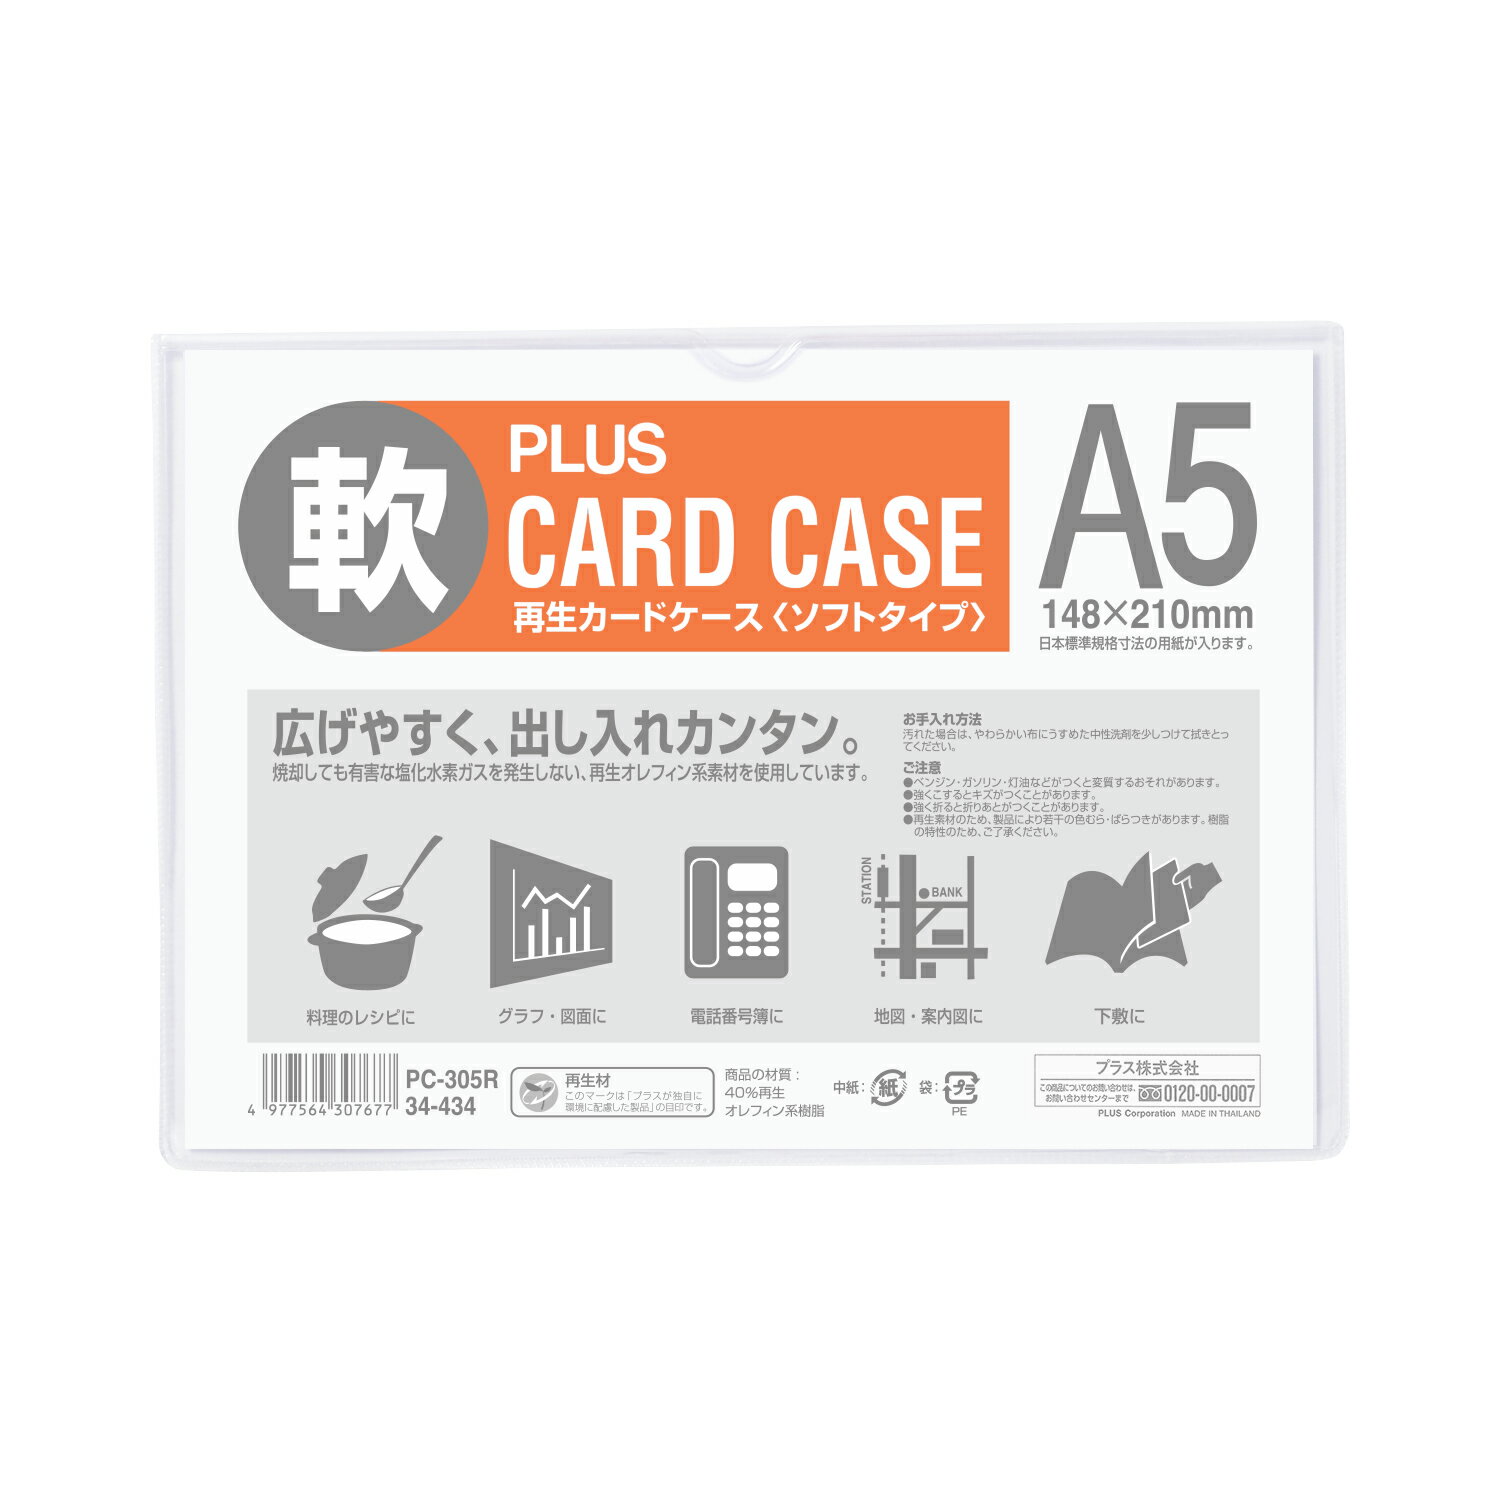 【PLUS】 20個セットカードケース(パスケース) ソフトタイプ A5 PC-305R(34434)